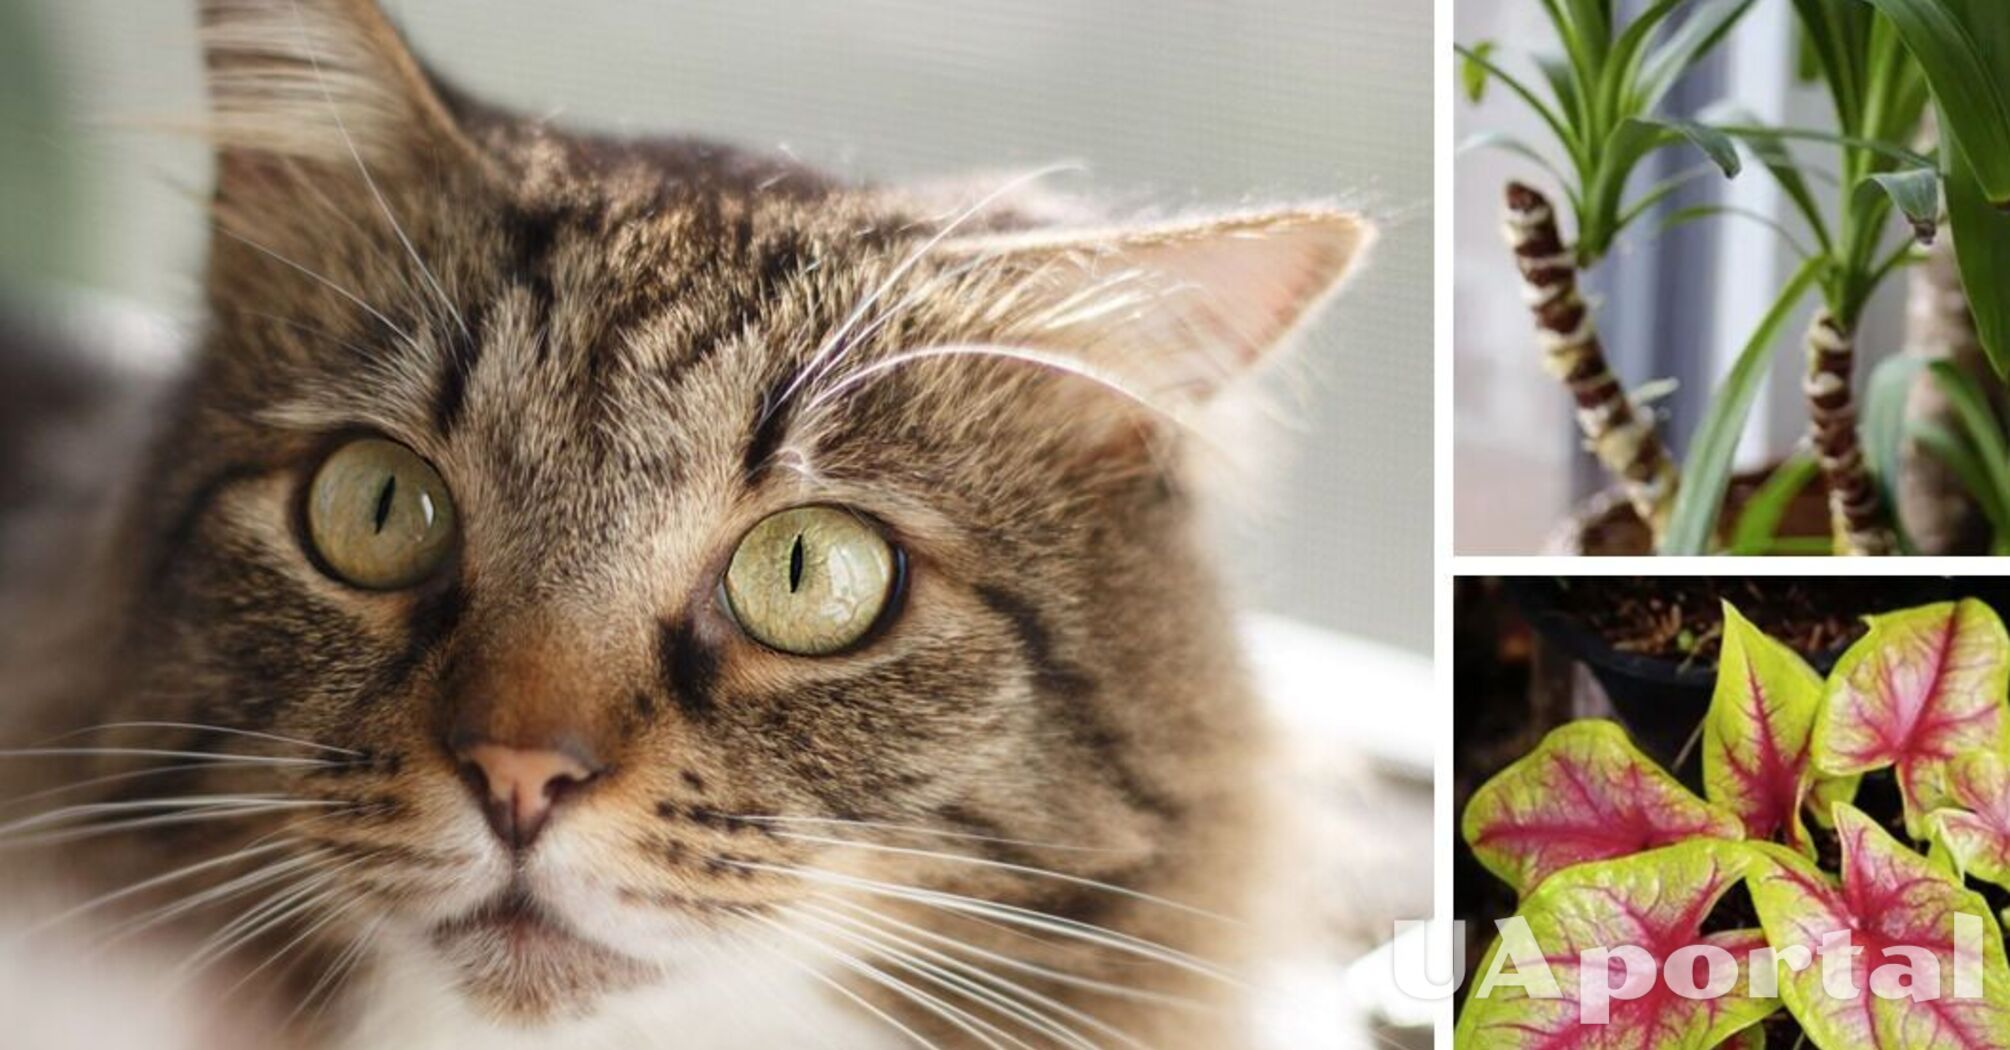 Ядовитые растения для кошек – какие вазоны ядовиты для кошек